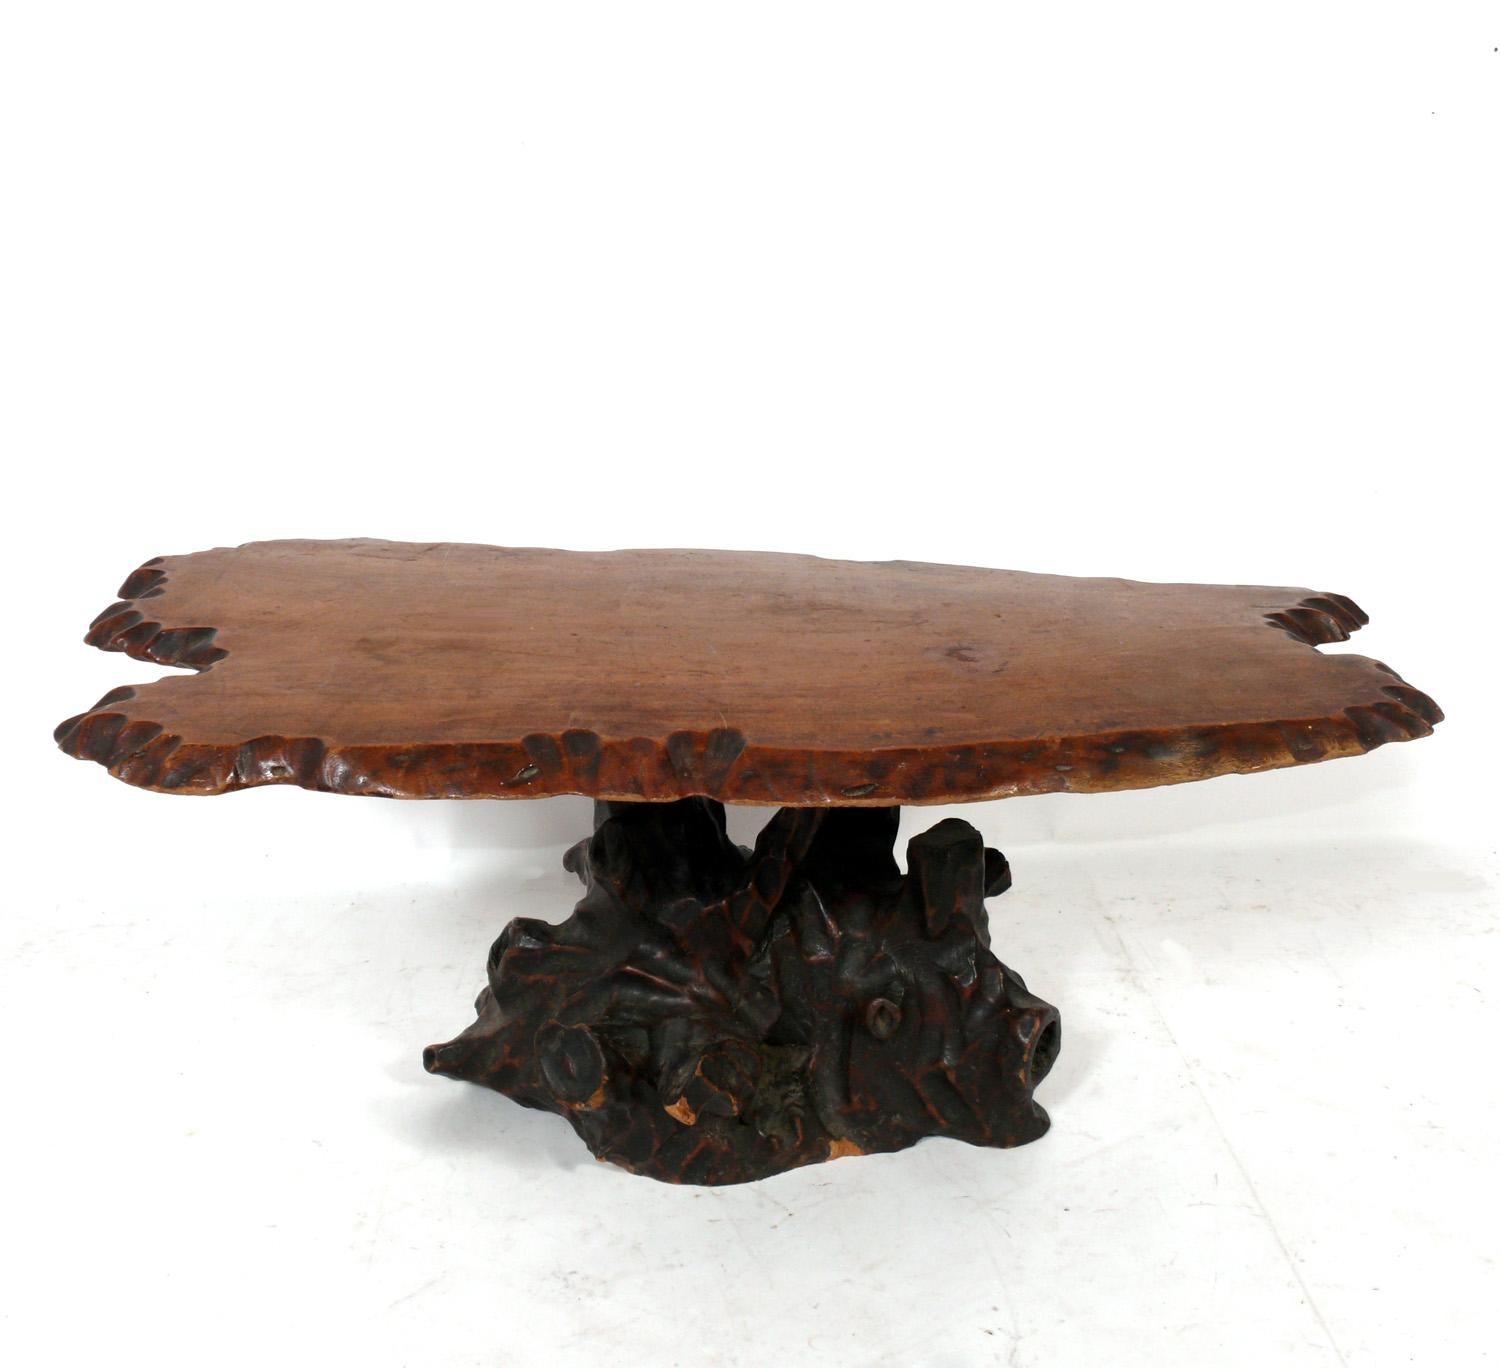 Table basse en bois japonais organique faite à la main, Japon, vers les années 1950. Composé d'un plateau en bois avec un bord sculpté et d'une base en racines organiques. Conserve la chaude patine d'origine. Peut être utilisé comme table basse ou